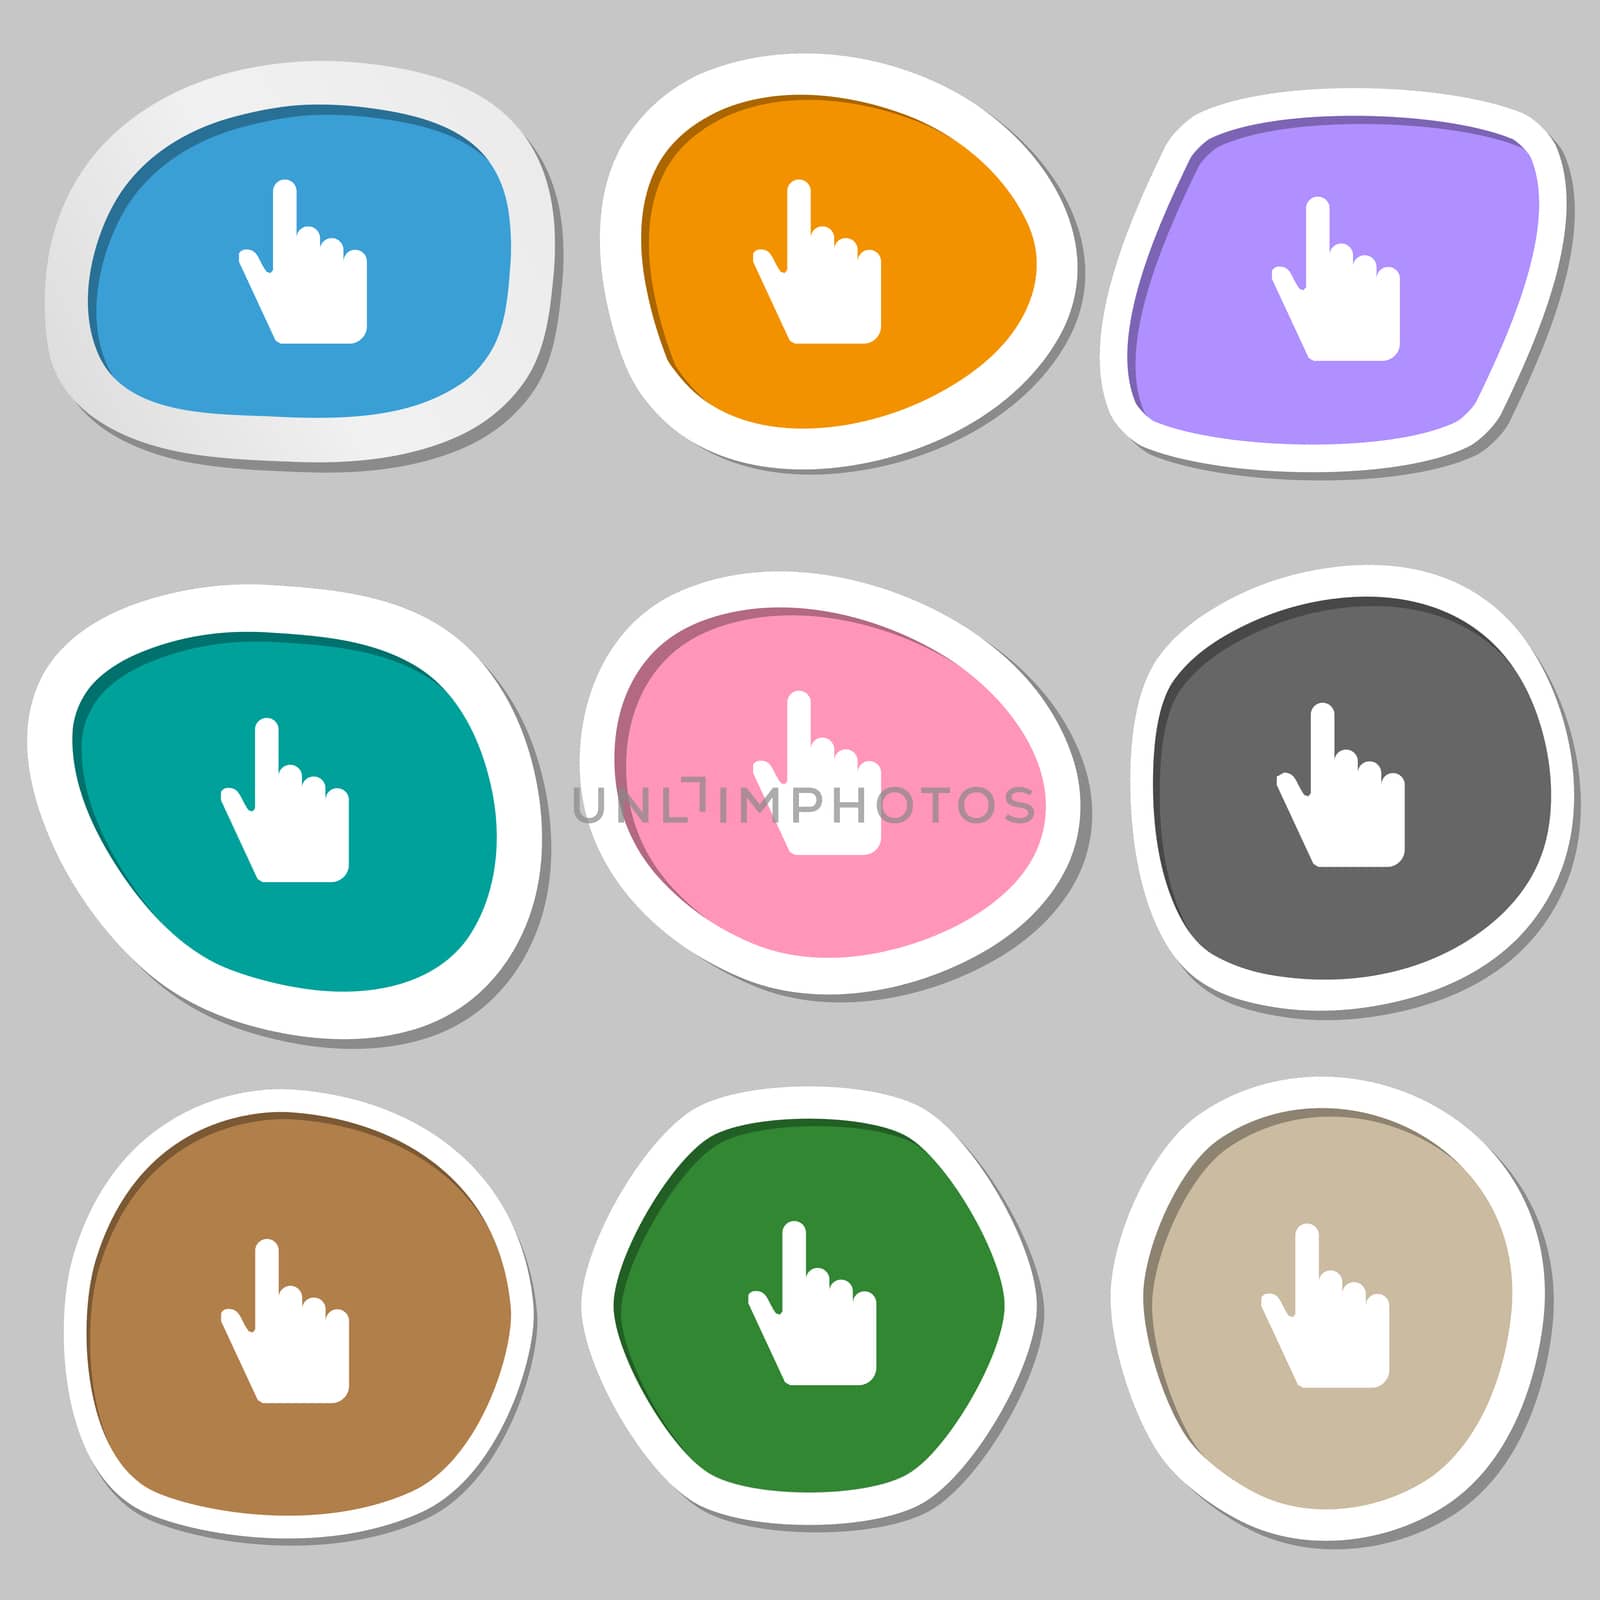 cursor icon symbols. Multicolored paper stickers. illustration